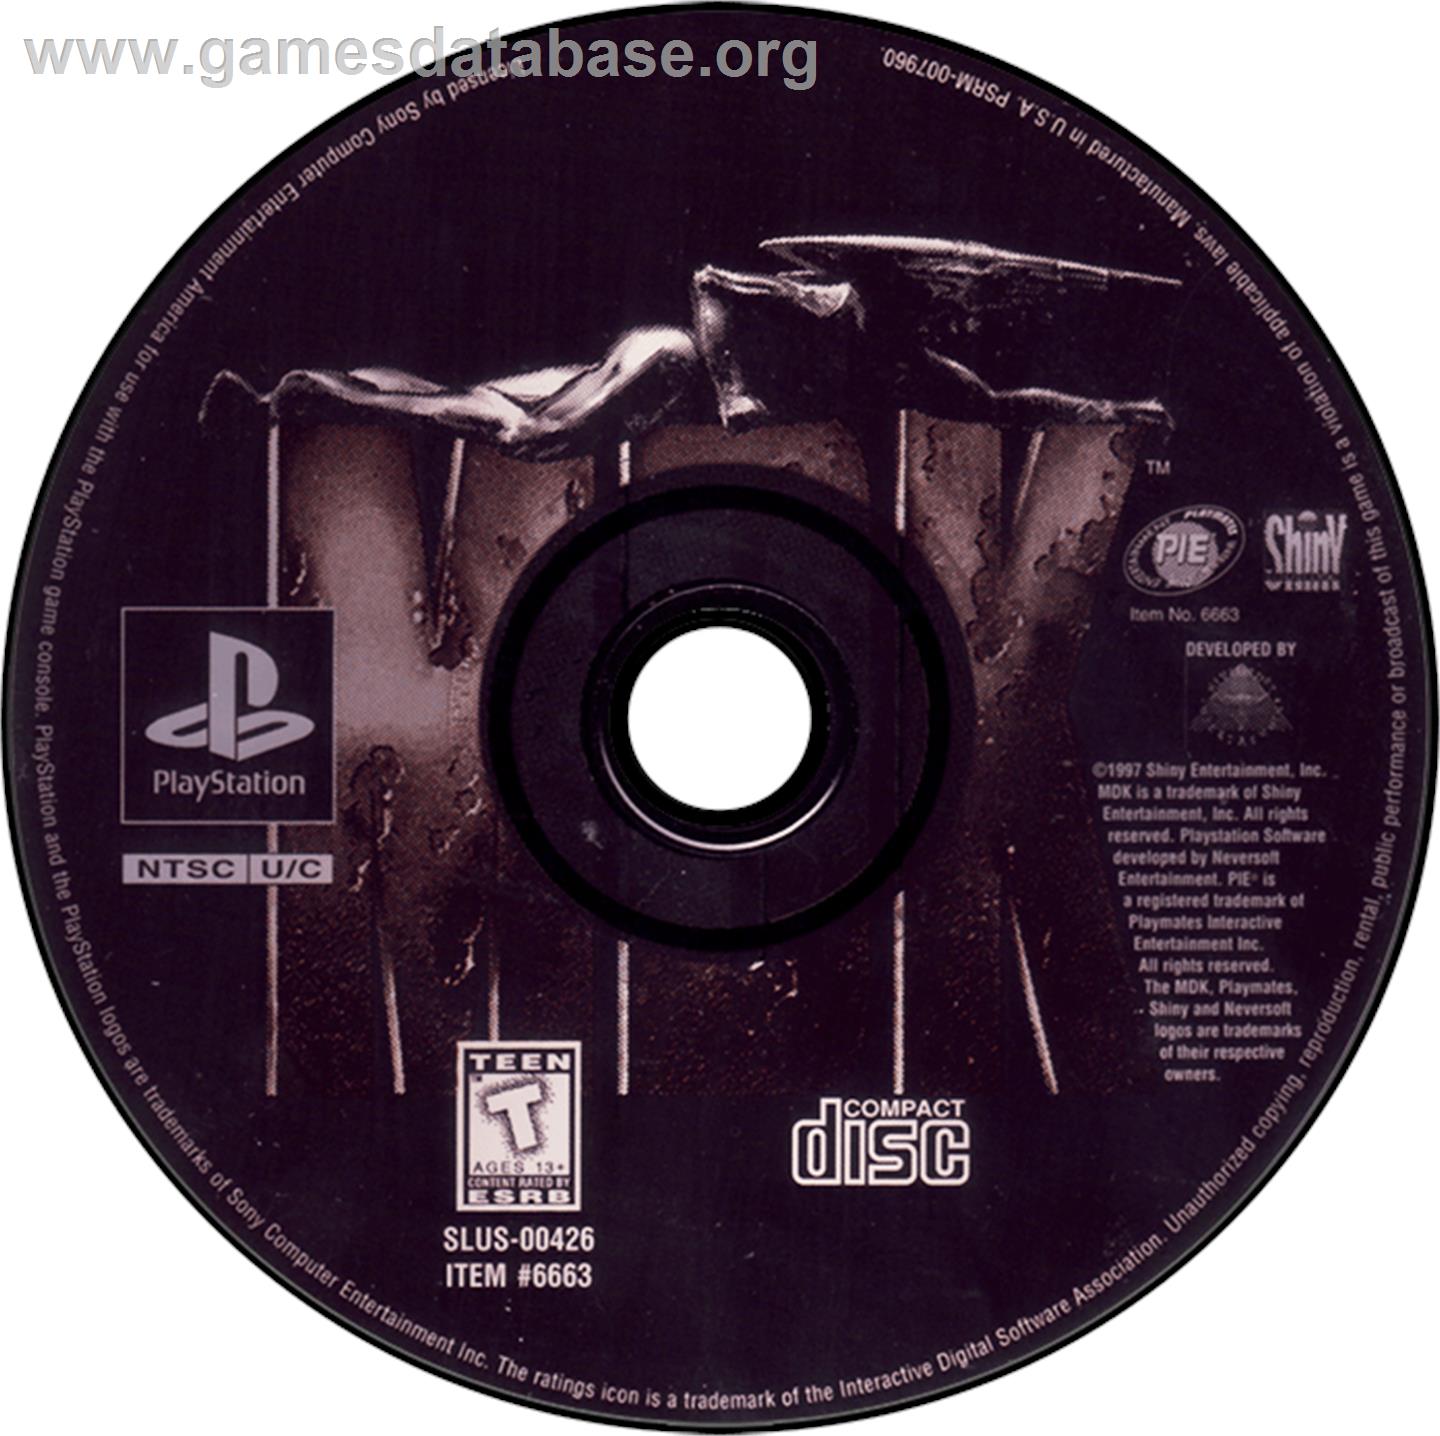 MDK - Sony Playstation - Artwork - Disc